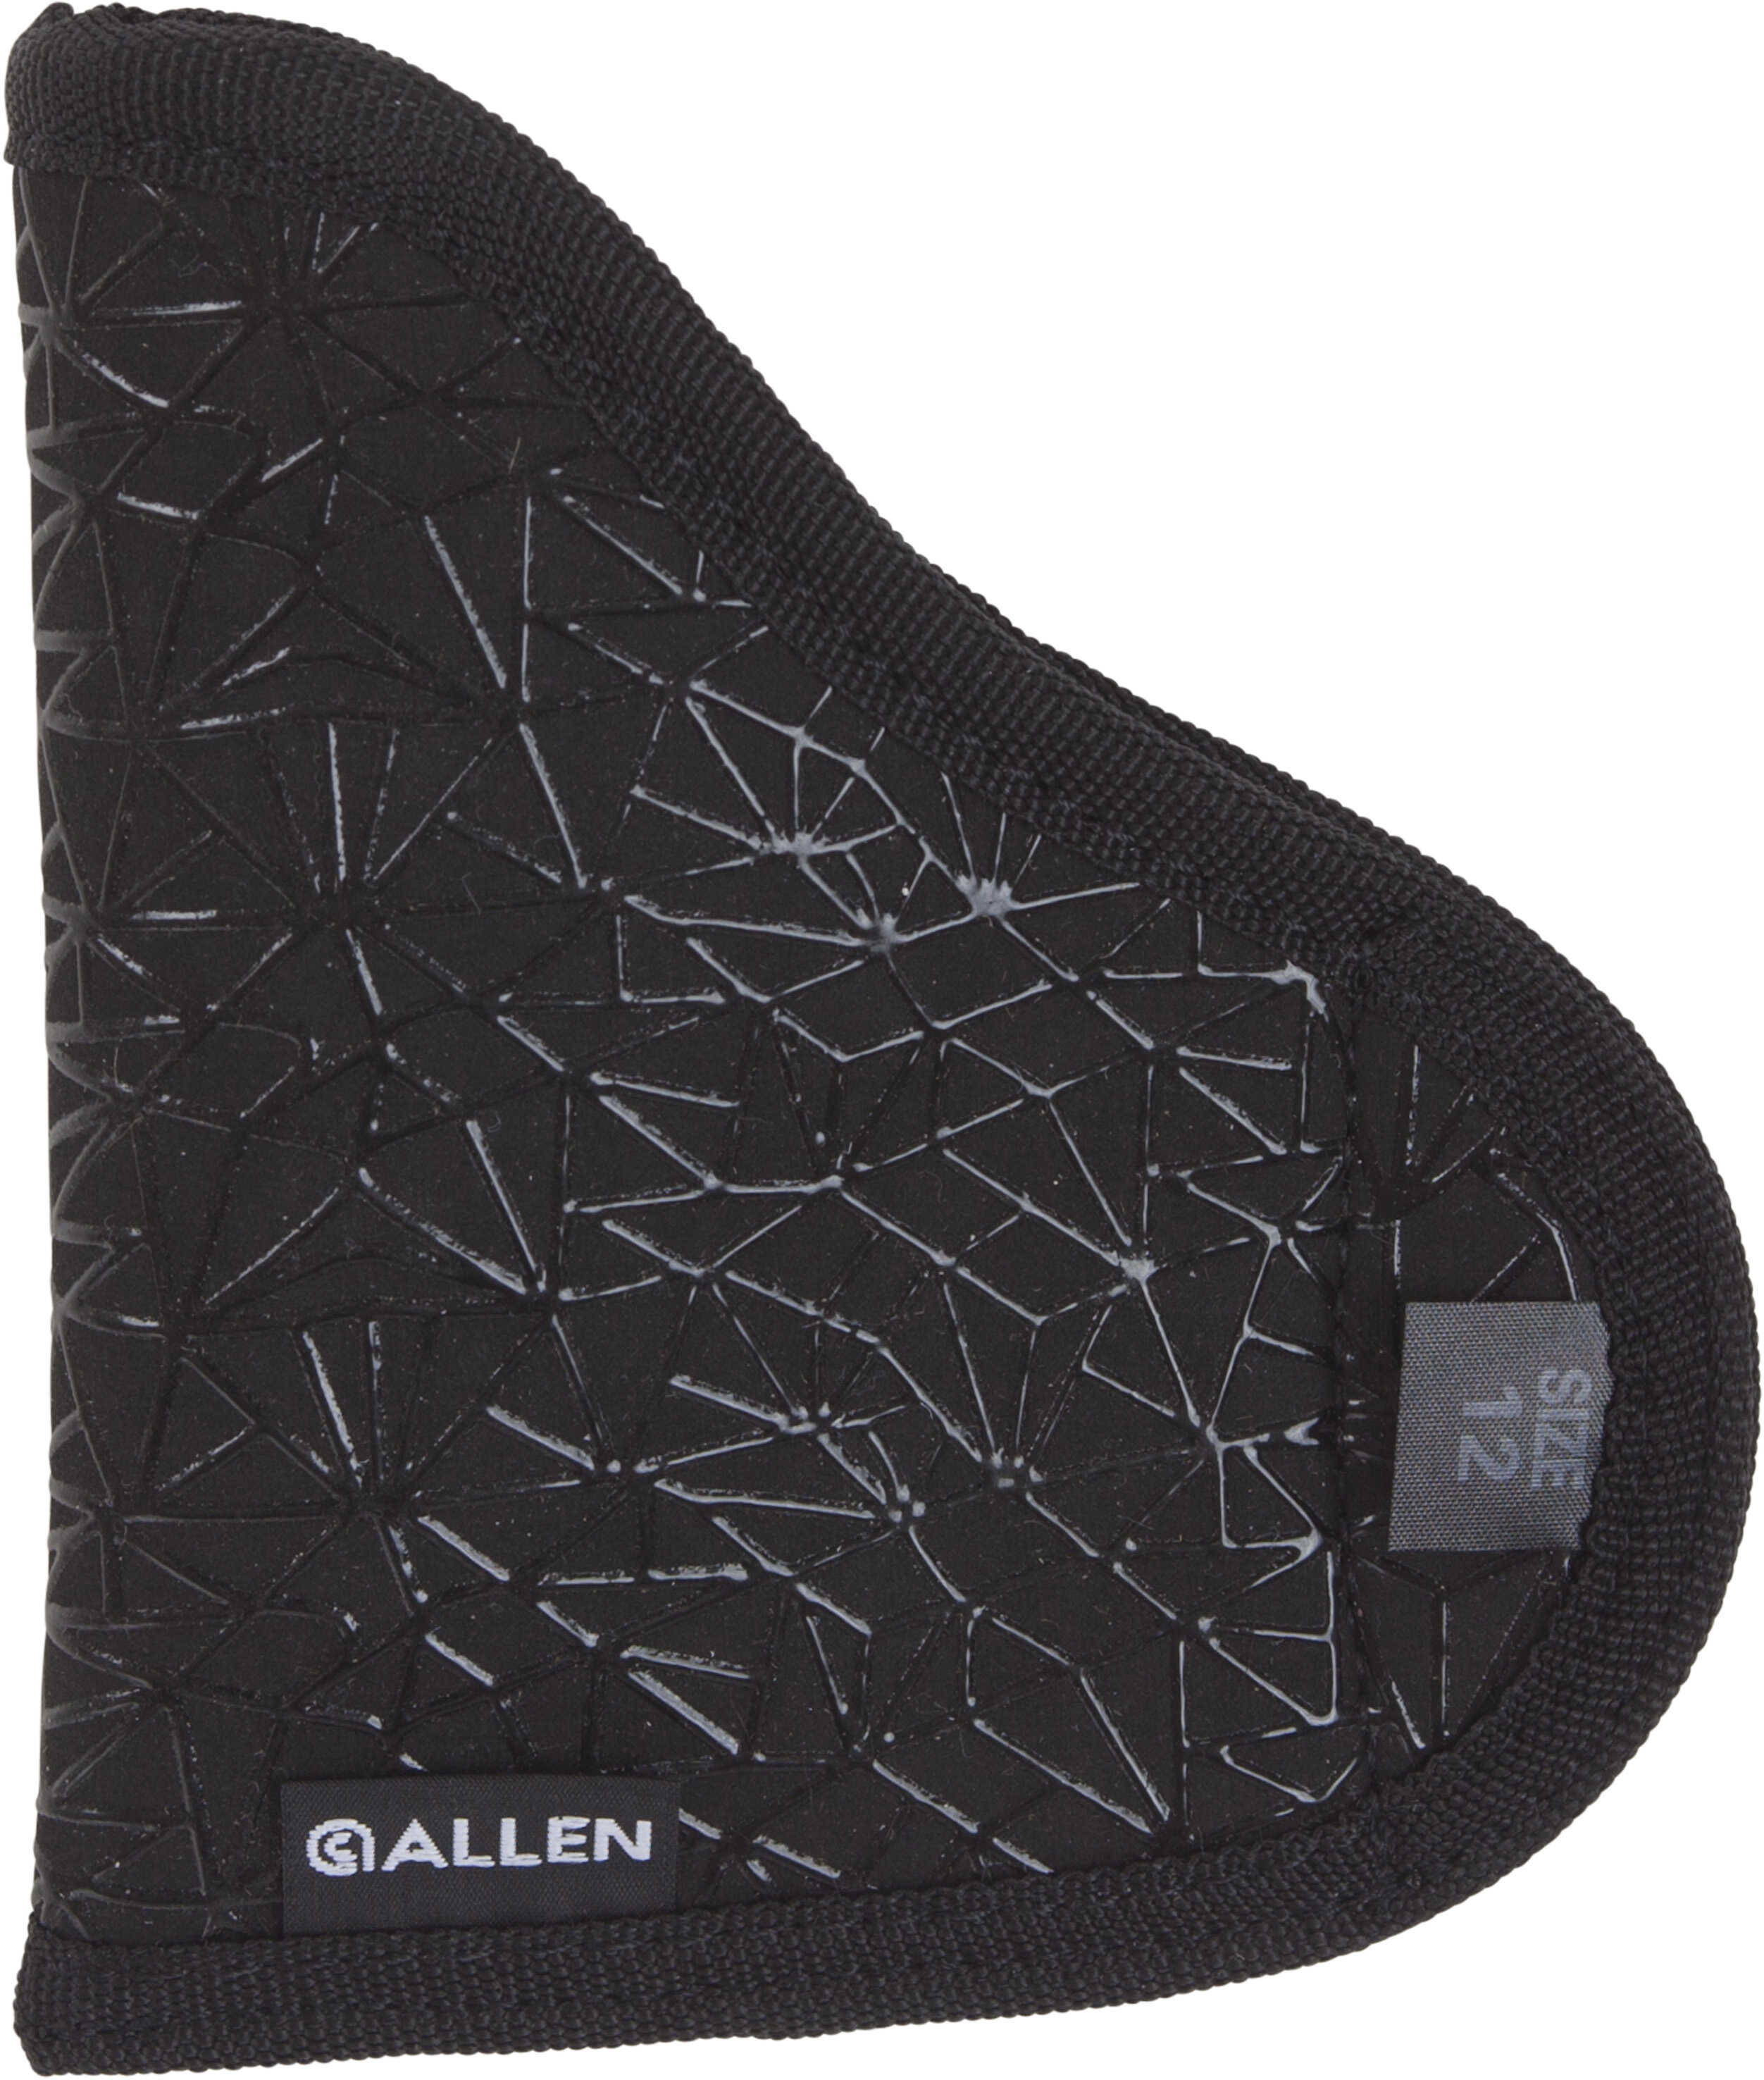 Allen Cases Spiderweb Holster .380 With Laser, Ambidextrous, Black Md: 44912